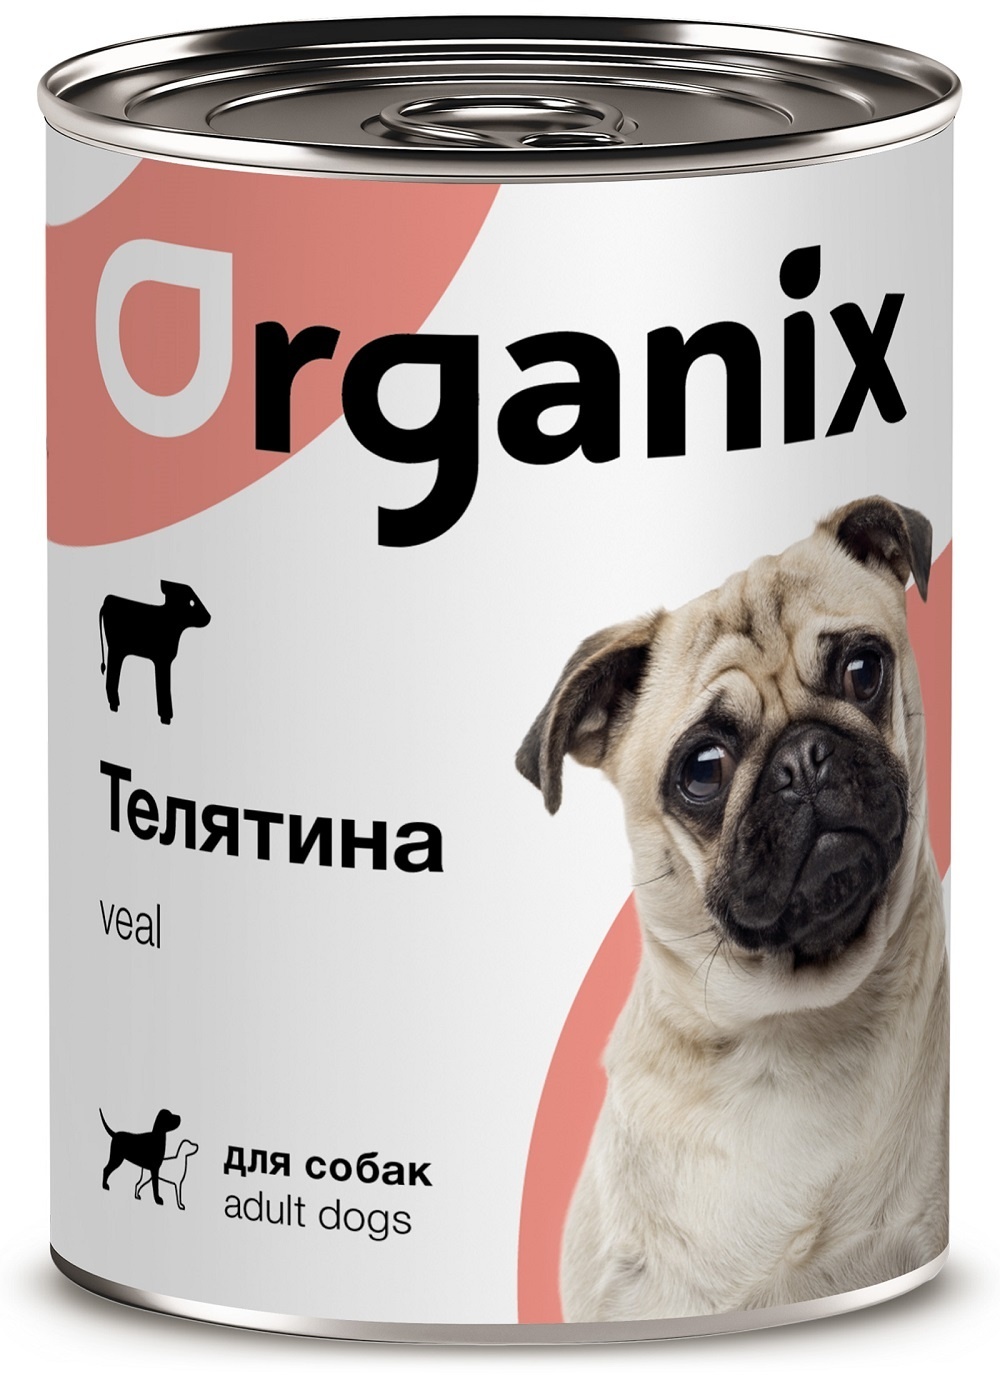 Organix консервы Organix консервы с телятиной для собак (100 г) organix консервы organix монобелковые премиум консервы для собак с уткой 100 г